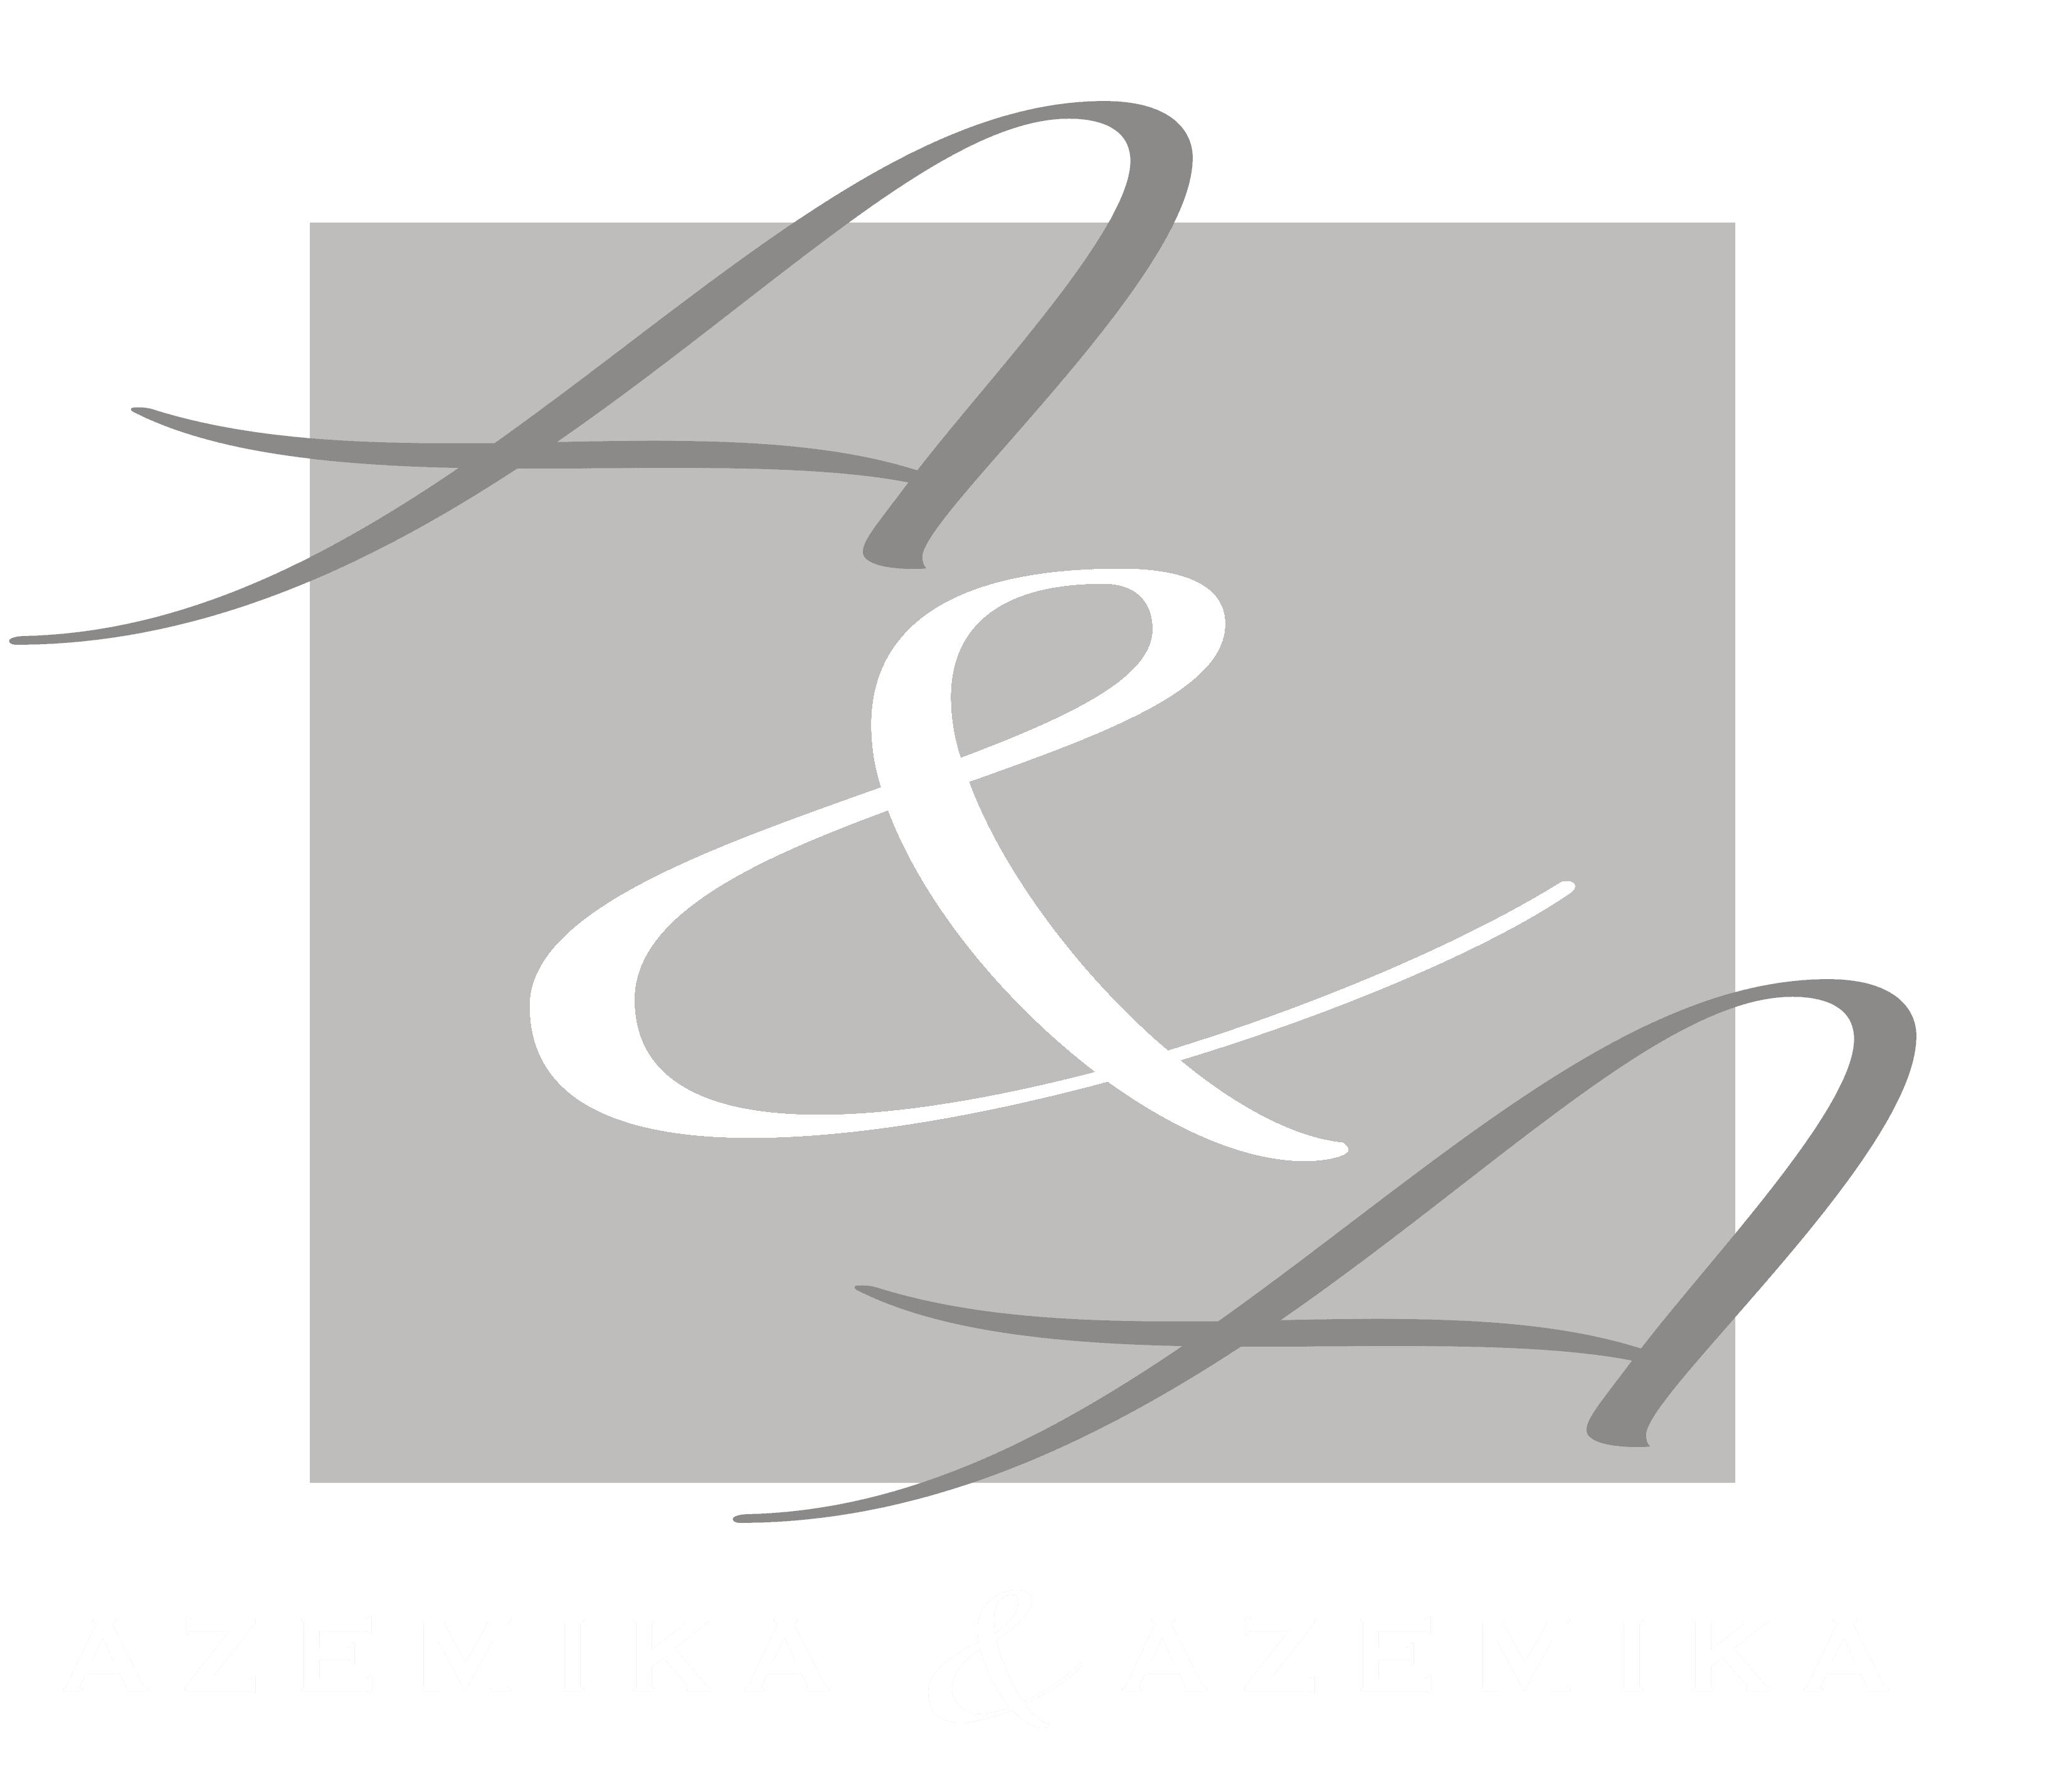 a & a logo design